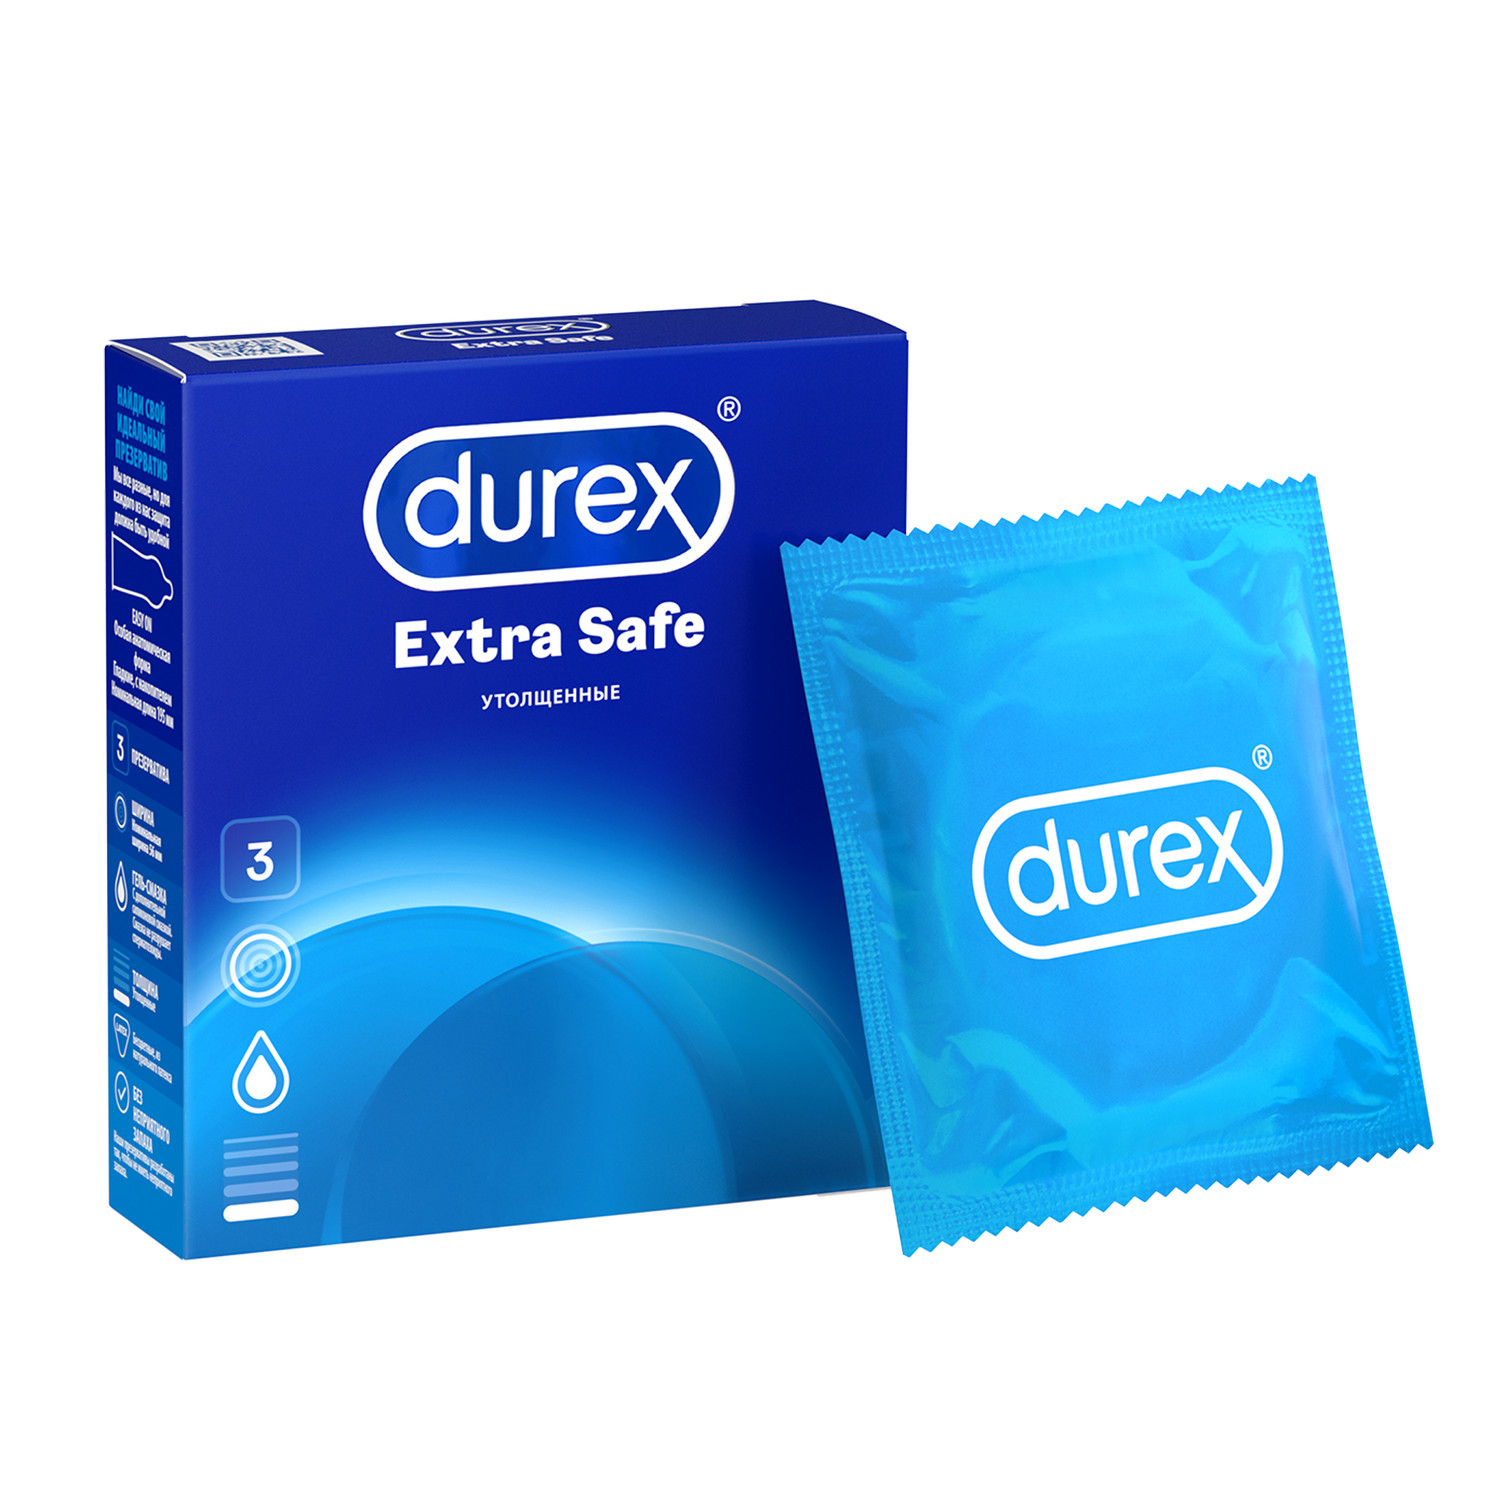 Презервативы Durex Extra Safe утолщенные, 3 шт. king презервативы с утолщенной стенкой ebony 12